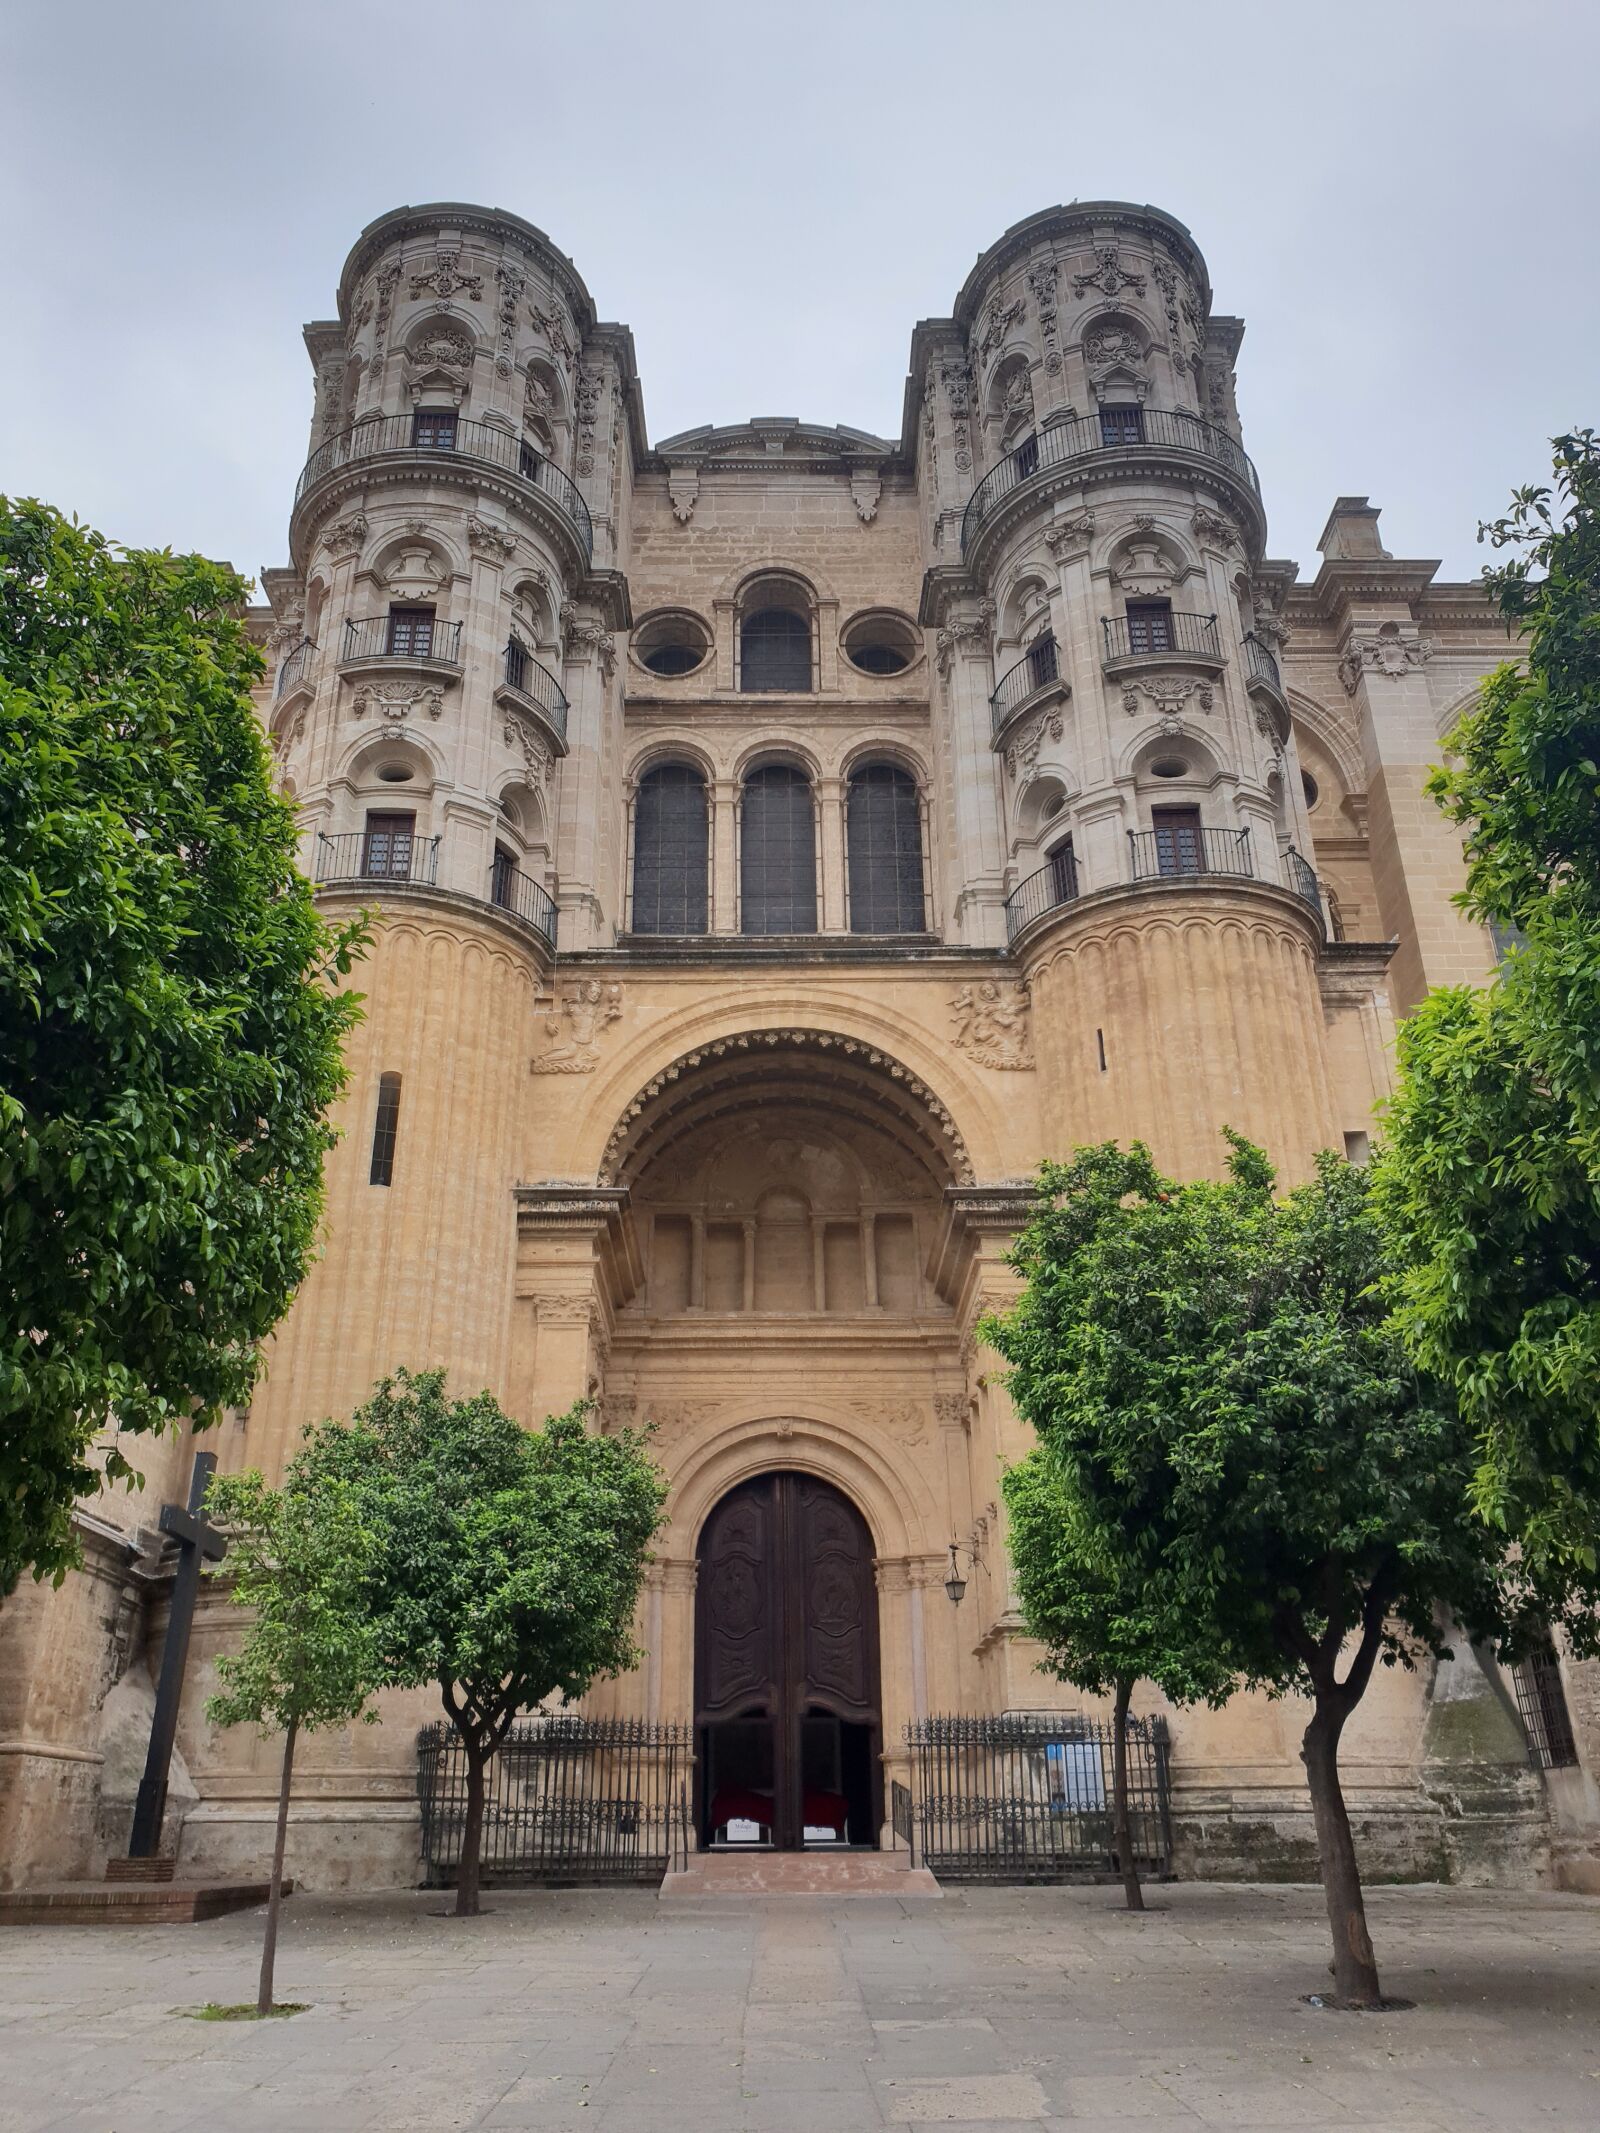 Samsung Galaxy S9 sample photo. Malaga, cathedral, malagacentro photography